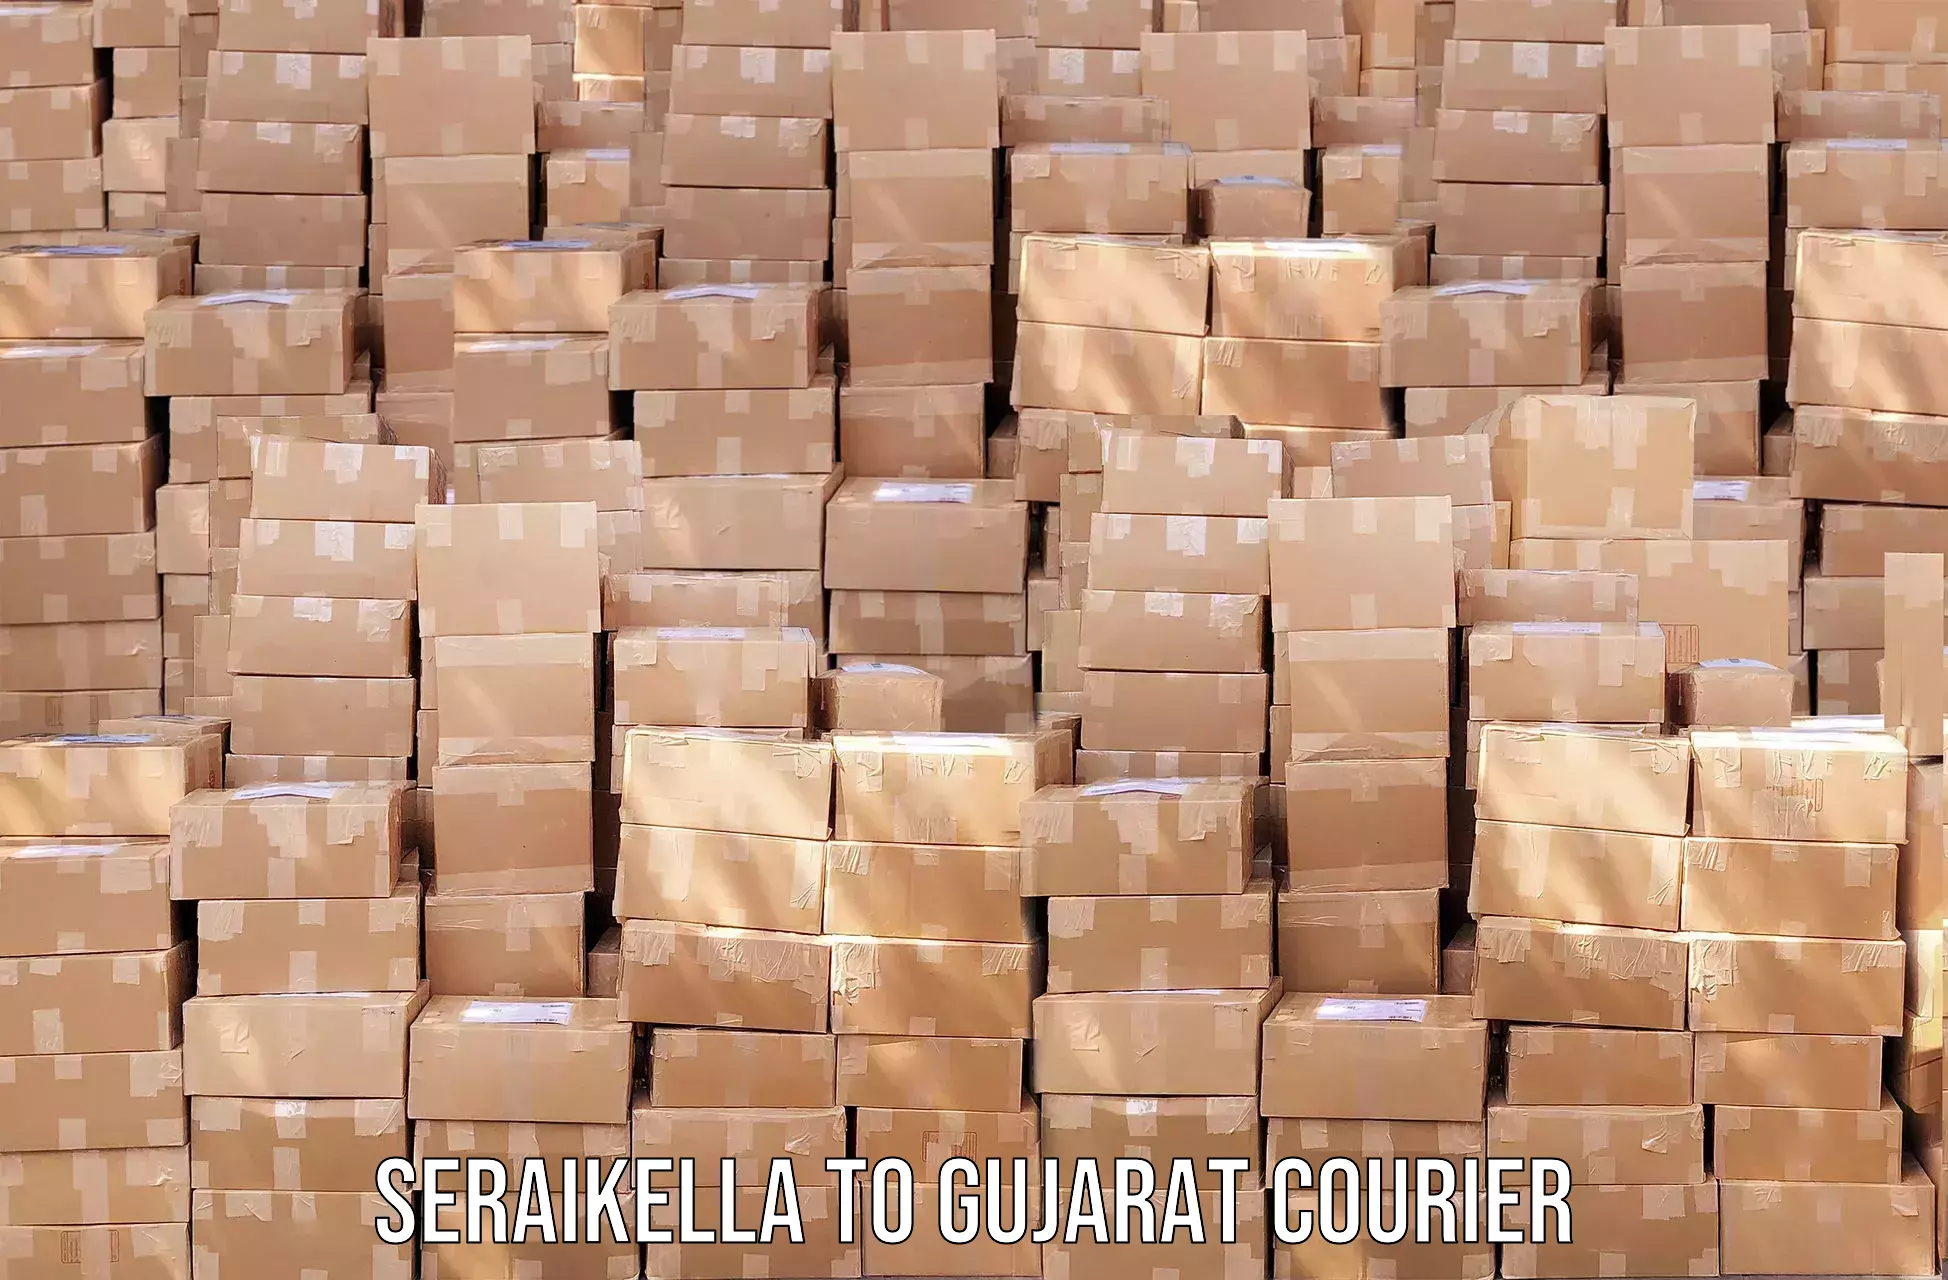 Personal parcel delivery Seraikella to Gujarat